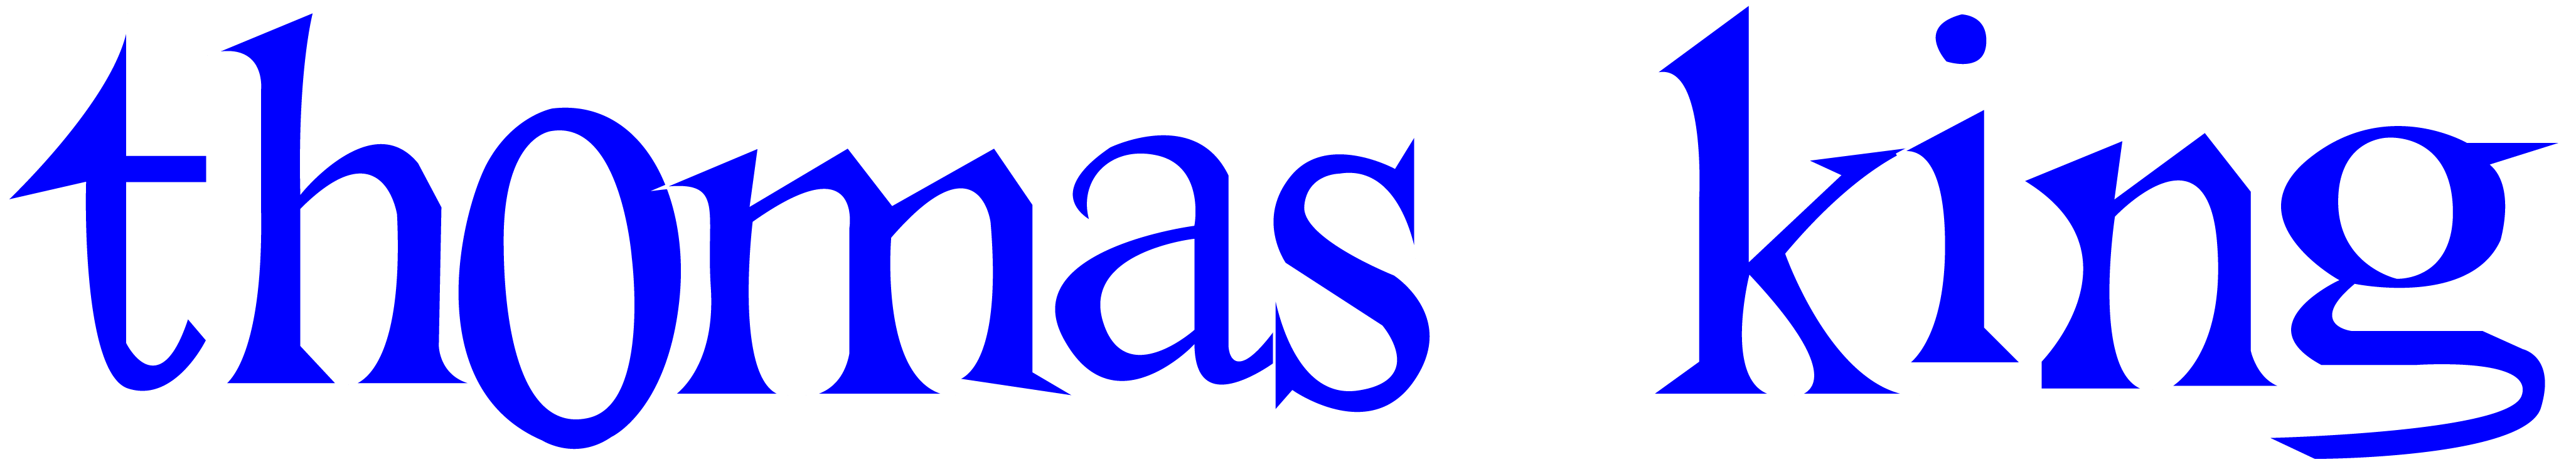 Thomas King Logo